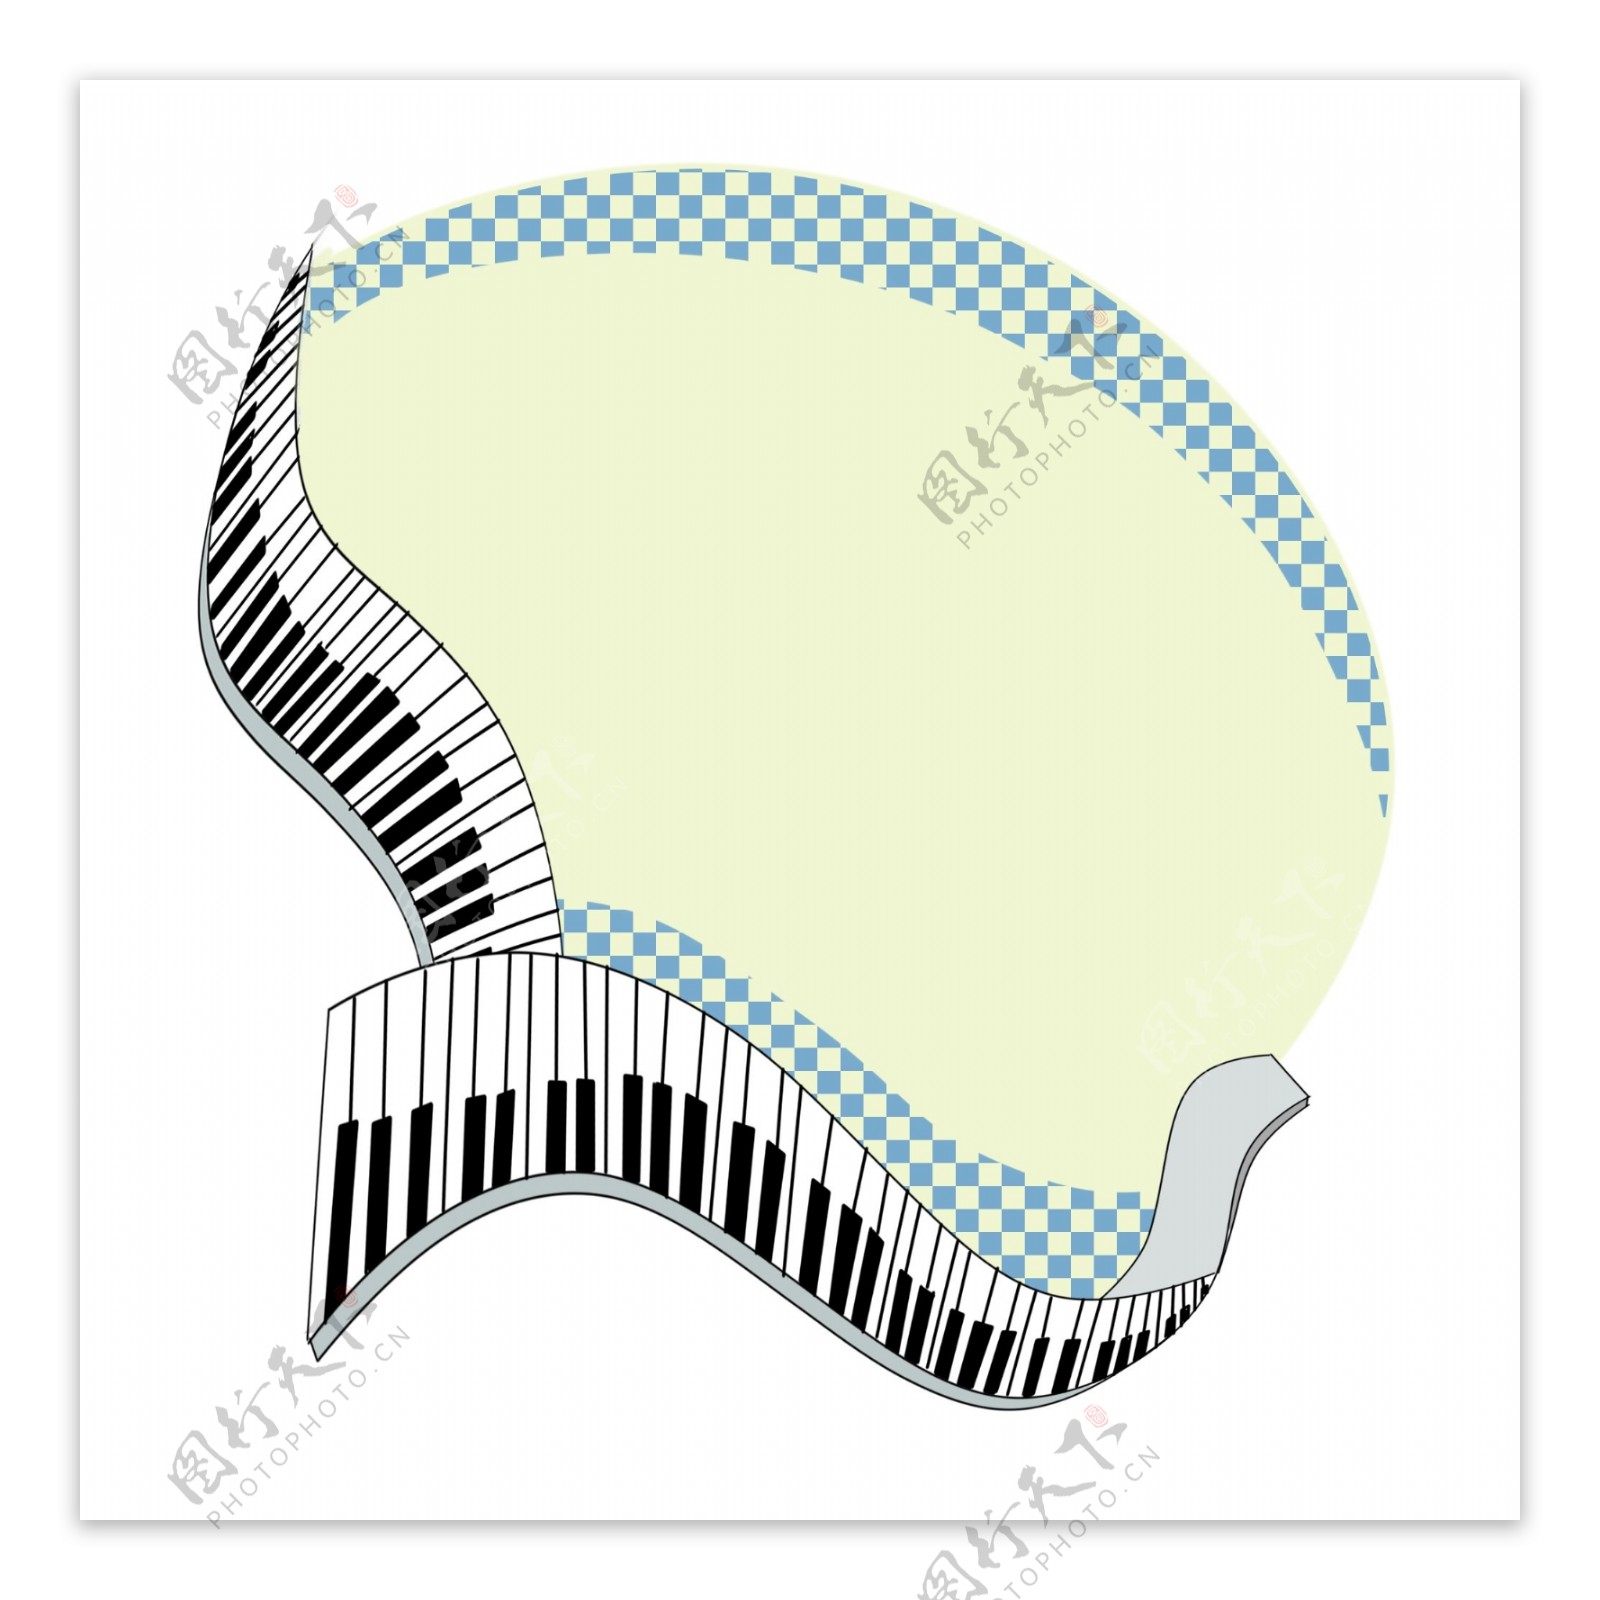 音乐元素边钢琴黑白琴键相框手绘乐器画框